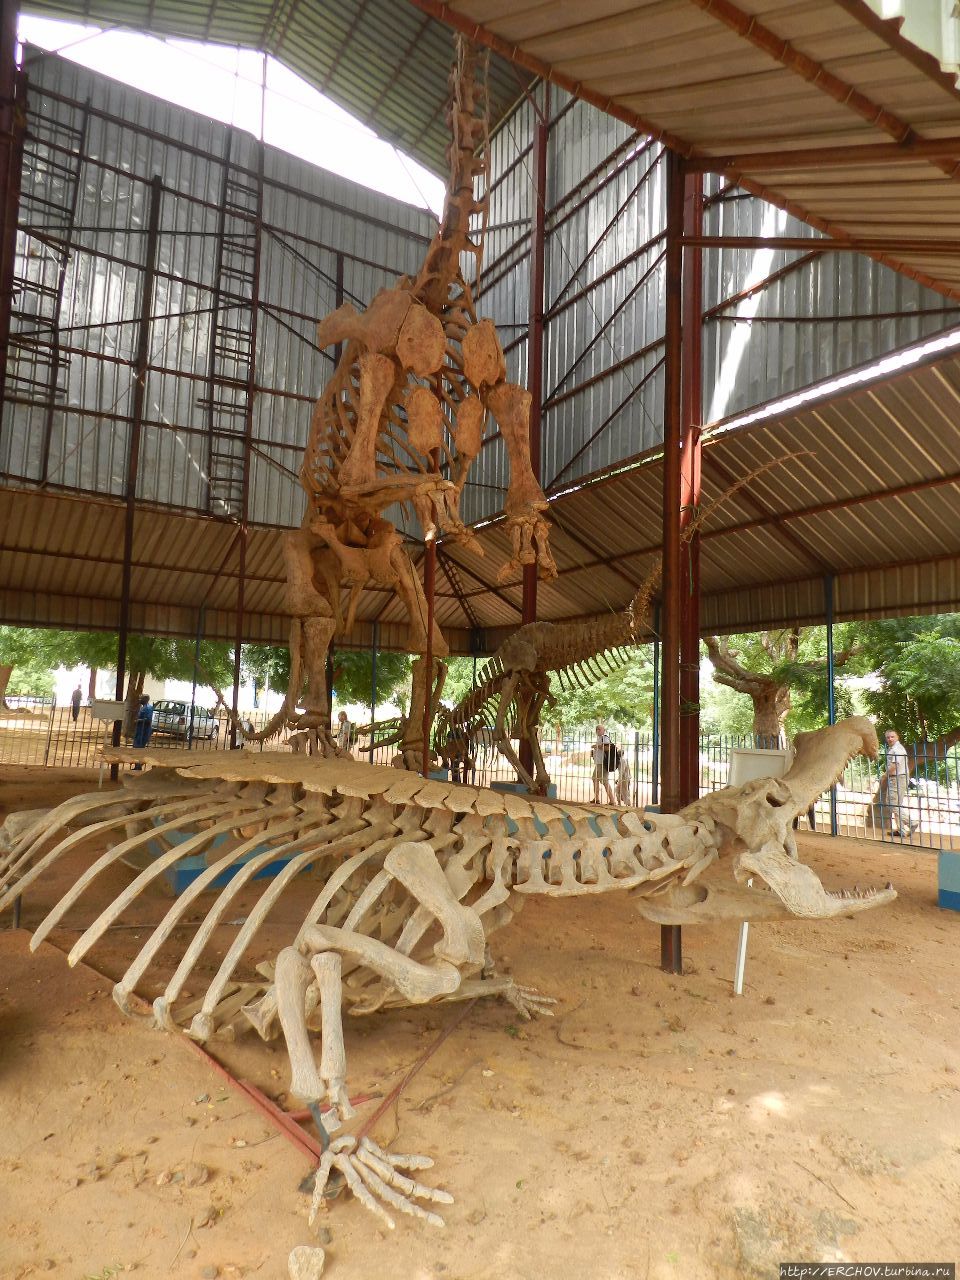 Нигер. Ч — 2. Национальный музей Республики Нигер Ниамей, Нигер